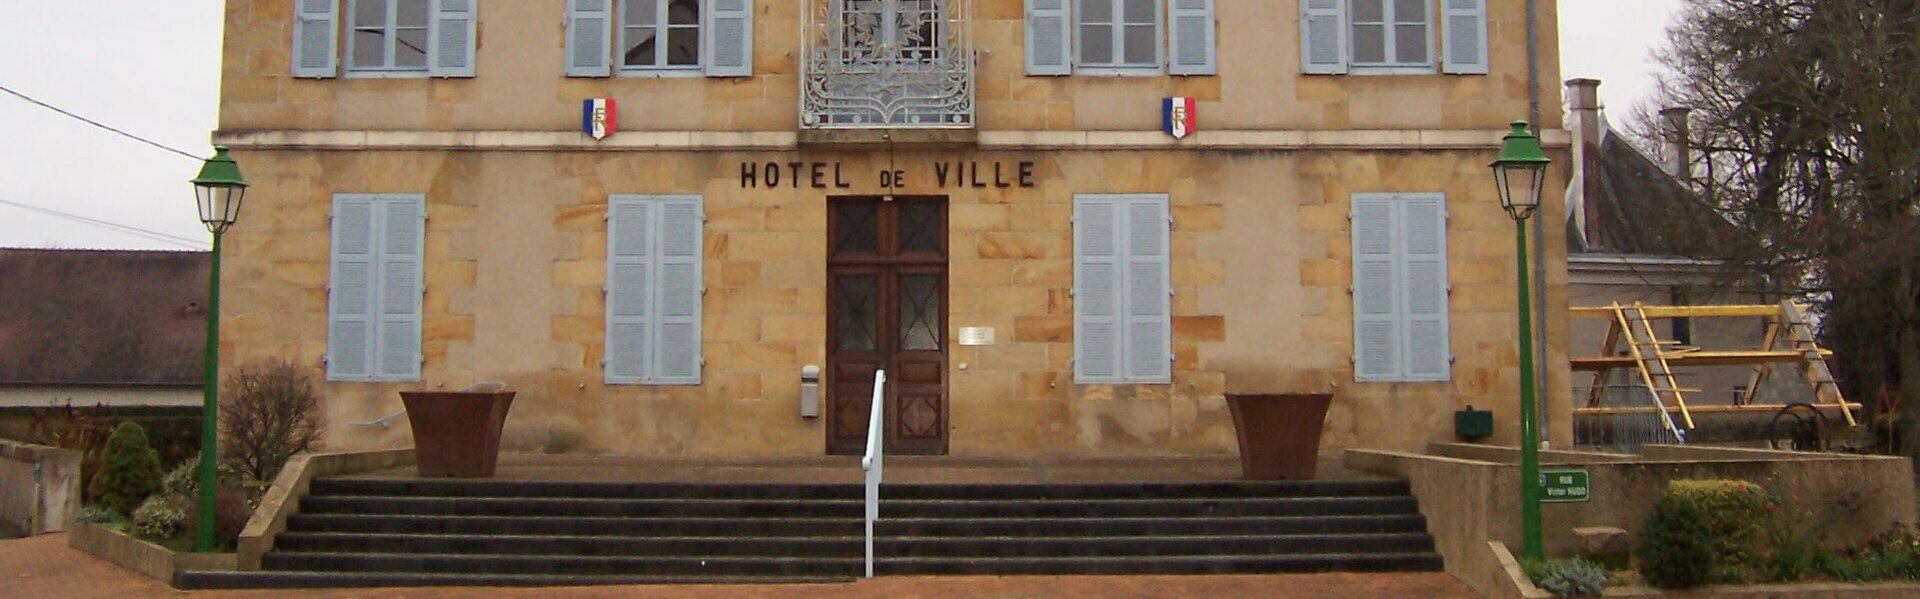 Menu de la Cantine Mairie Montmarault Allier centre